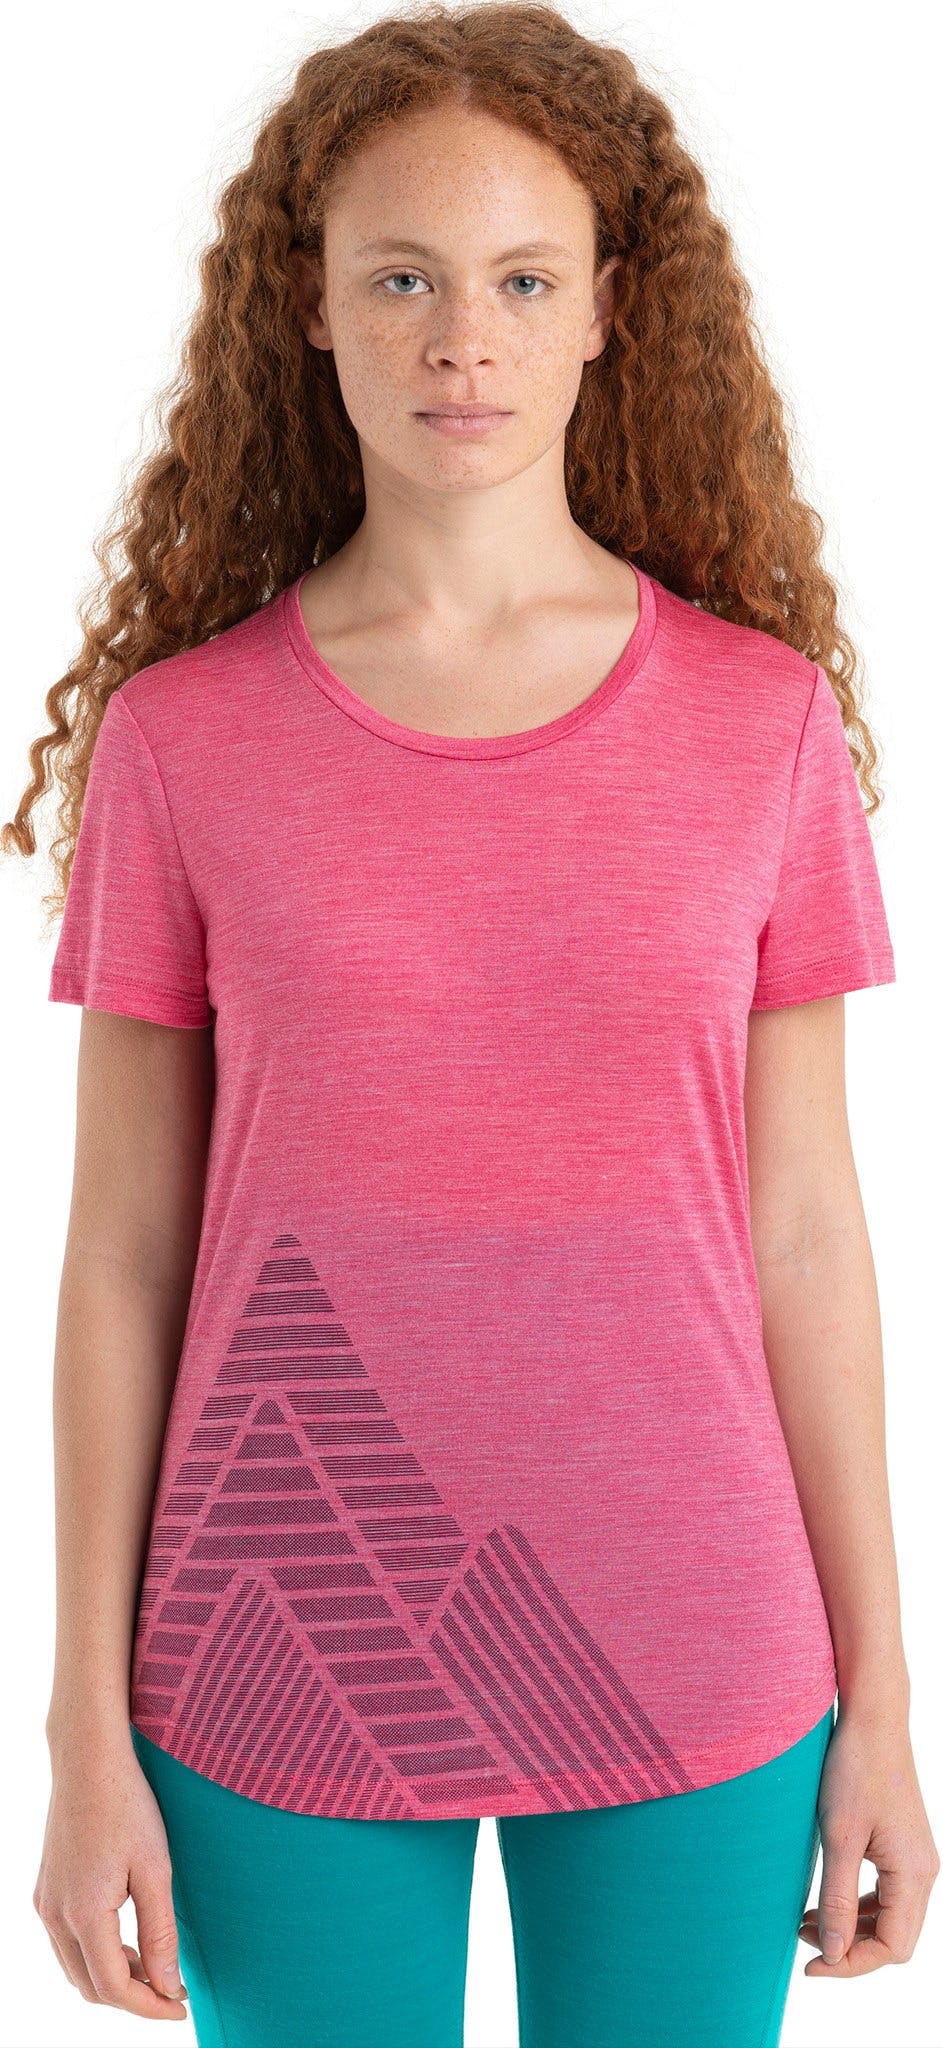 Numéro de l'image de la galerie de produits 1 pour le produit T-shirt à manches courtes en mérinos Peak Quest Sphere II 125 Cool-Lite - Femme